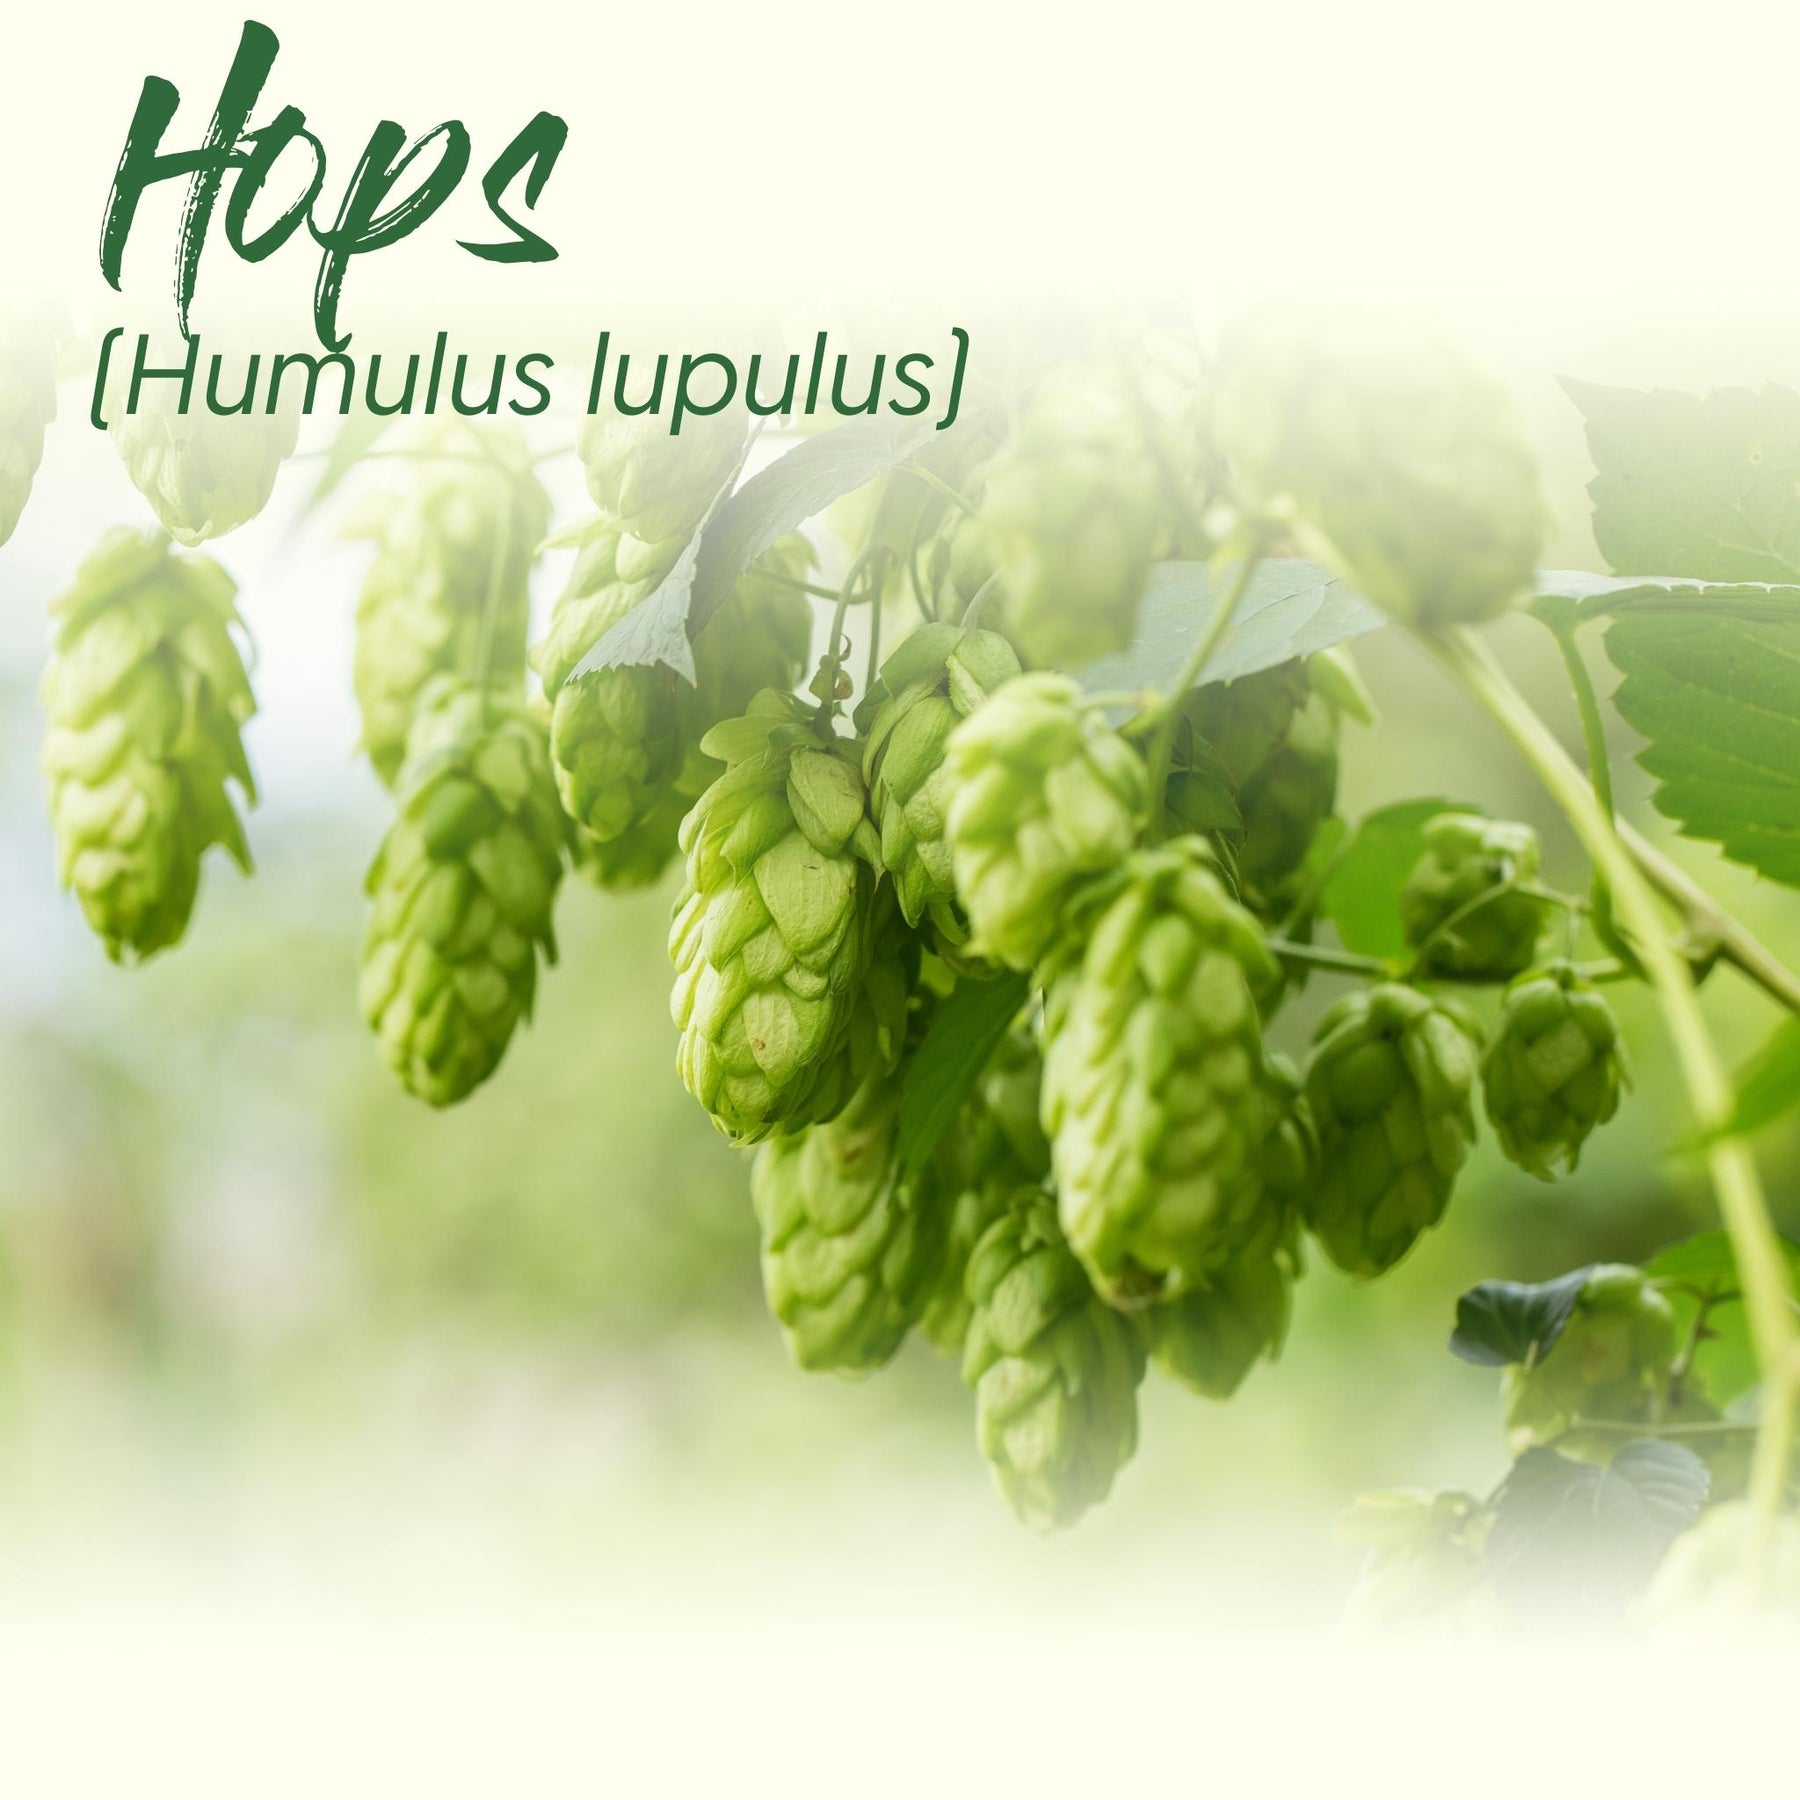 Medicinal Herb Spotlight: Hops